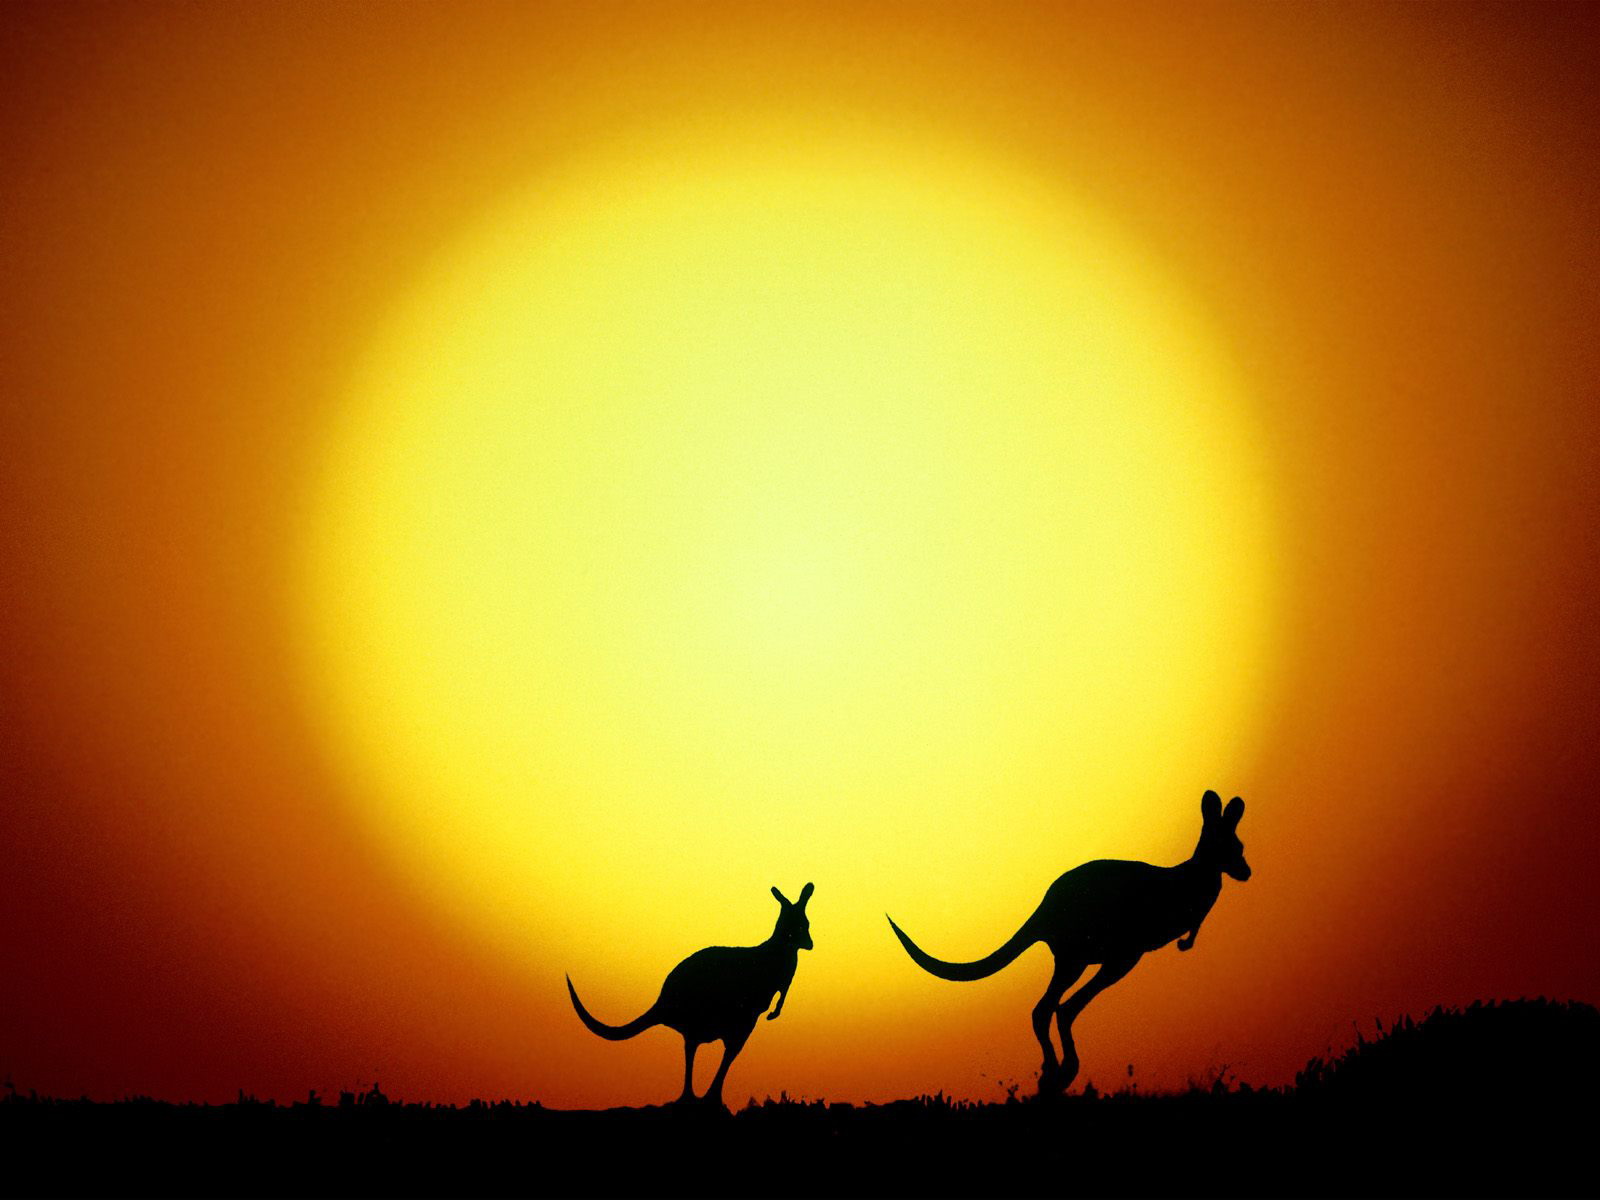 オーストラリアのiphoneの壁紙,空,野生動物,シルエット,日没,風景